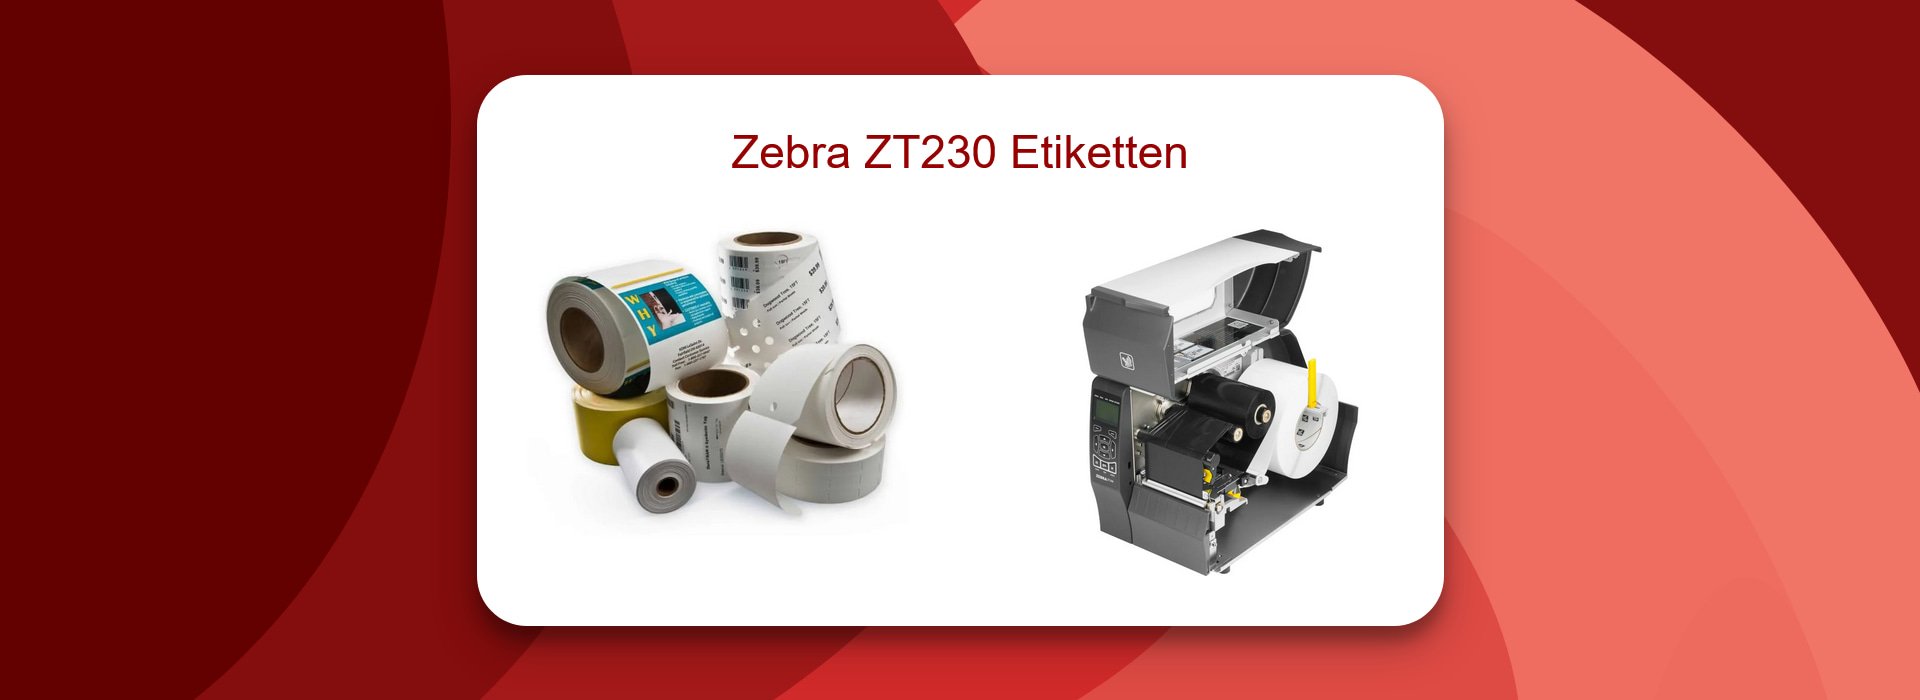 Zebra ZT230 Etiketten für die Industrie